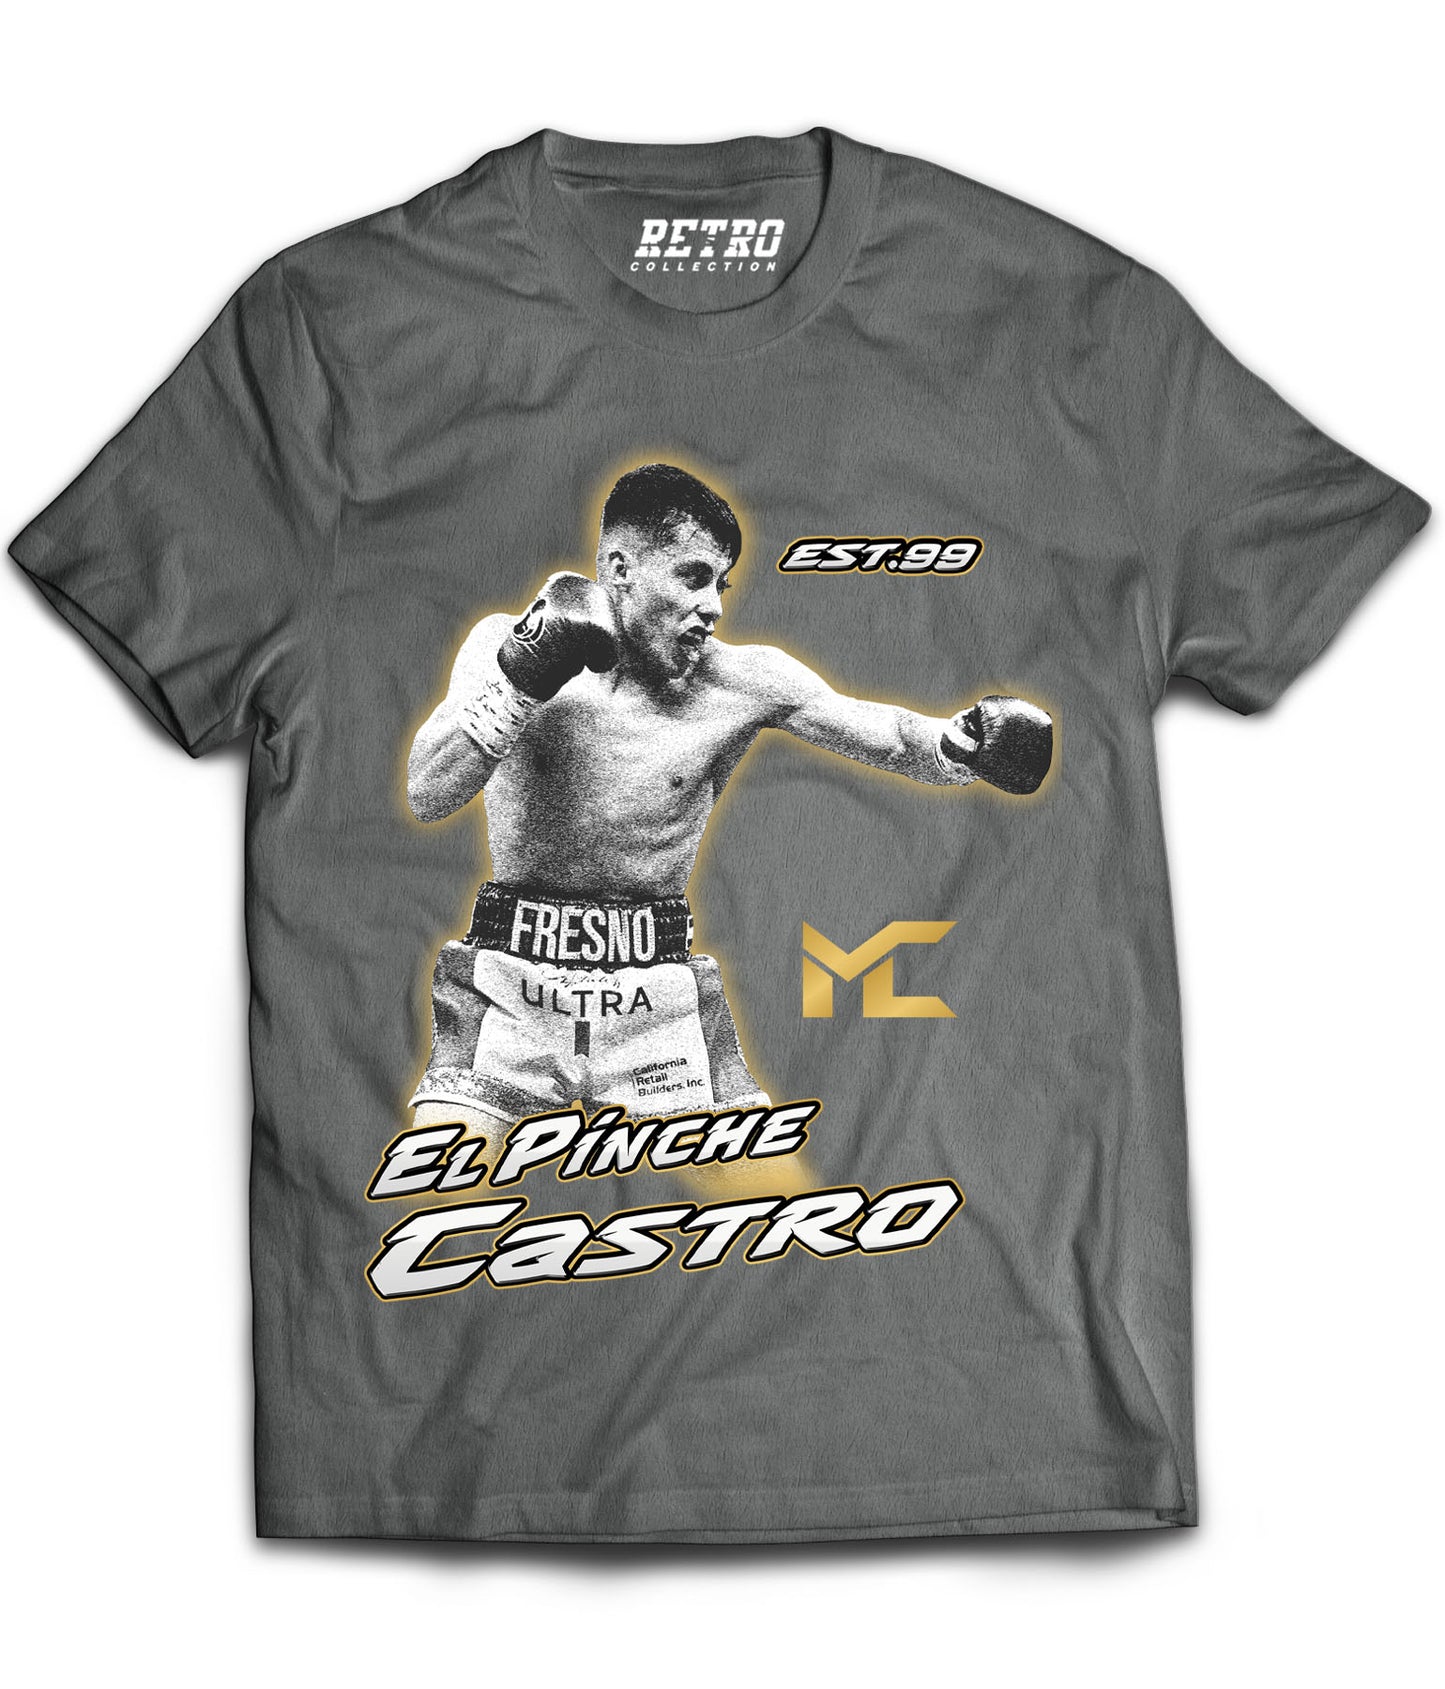 Marc Castro "El Pinche Castro" Tribute Shirt *LIMITED EDITION* (Black, Gray, Red, White)